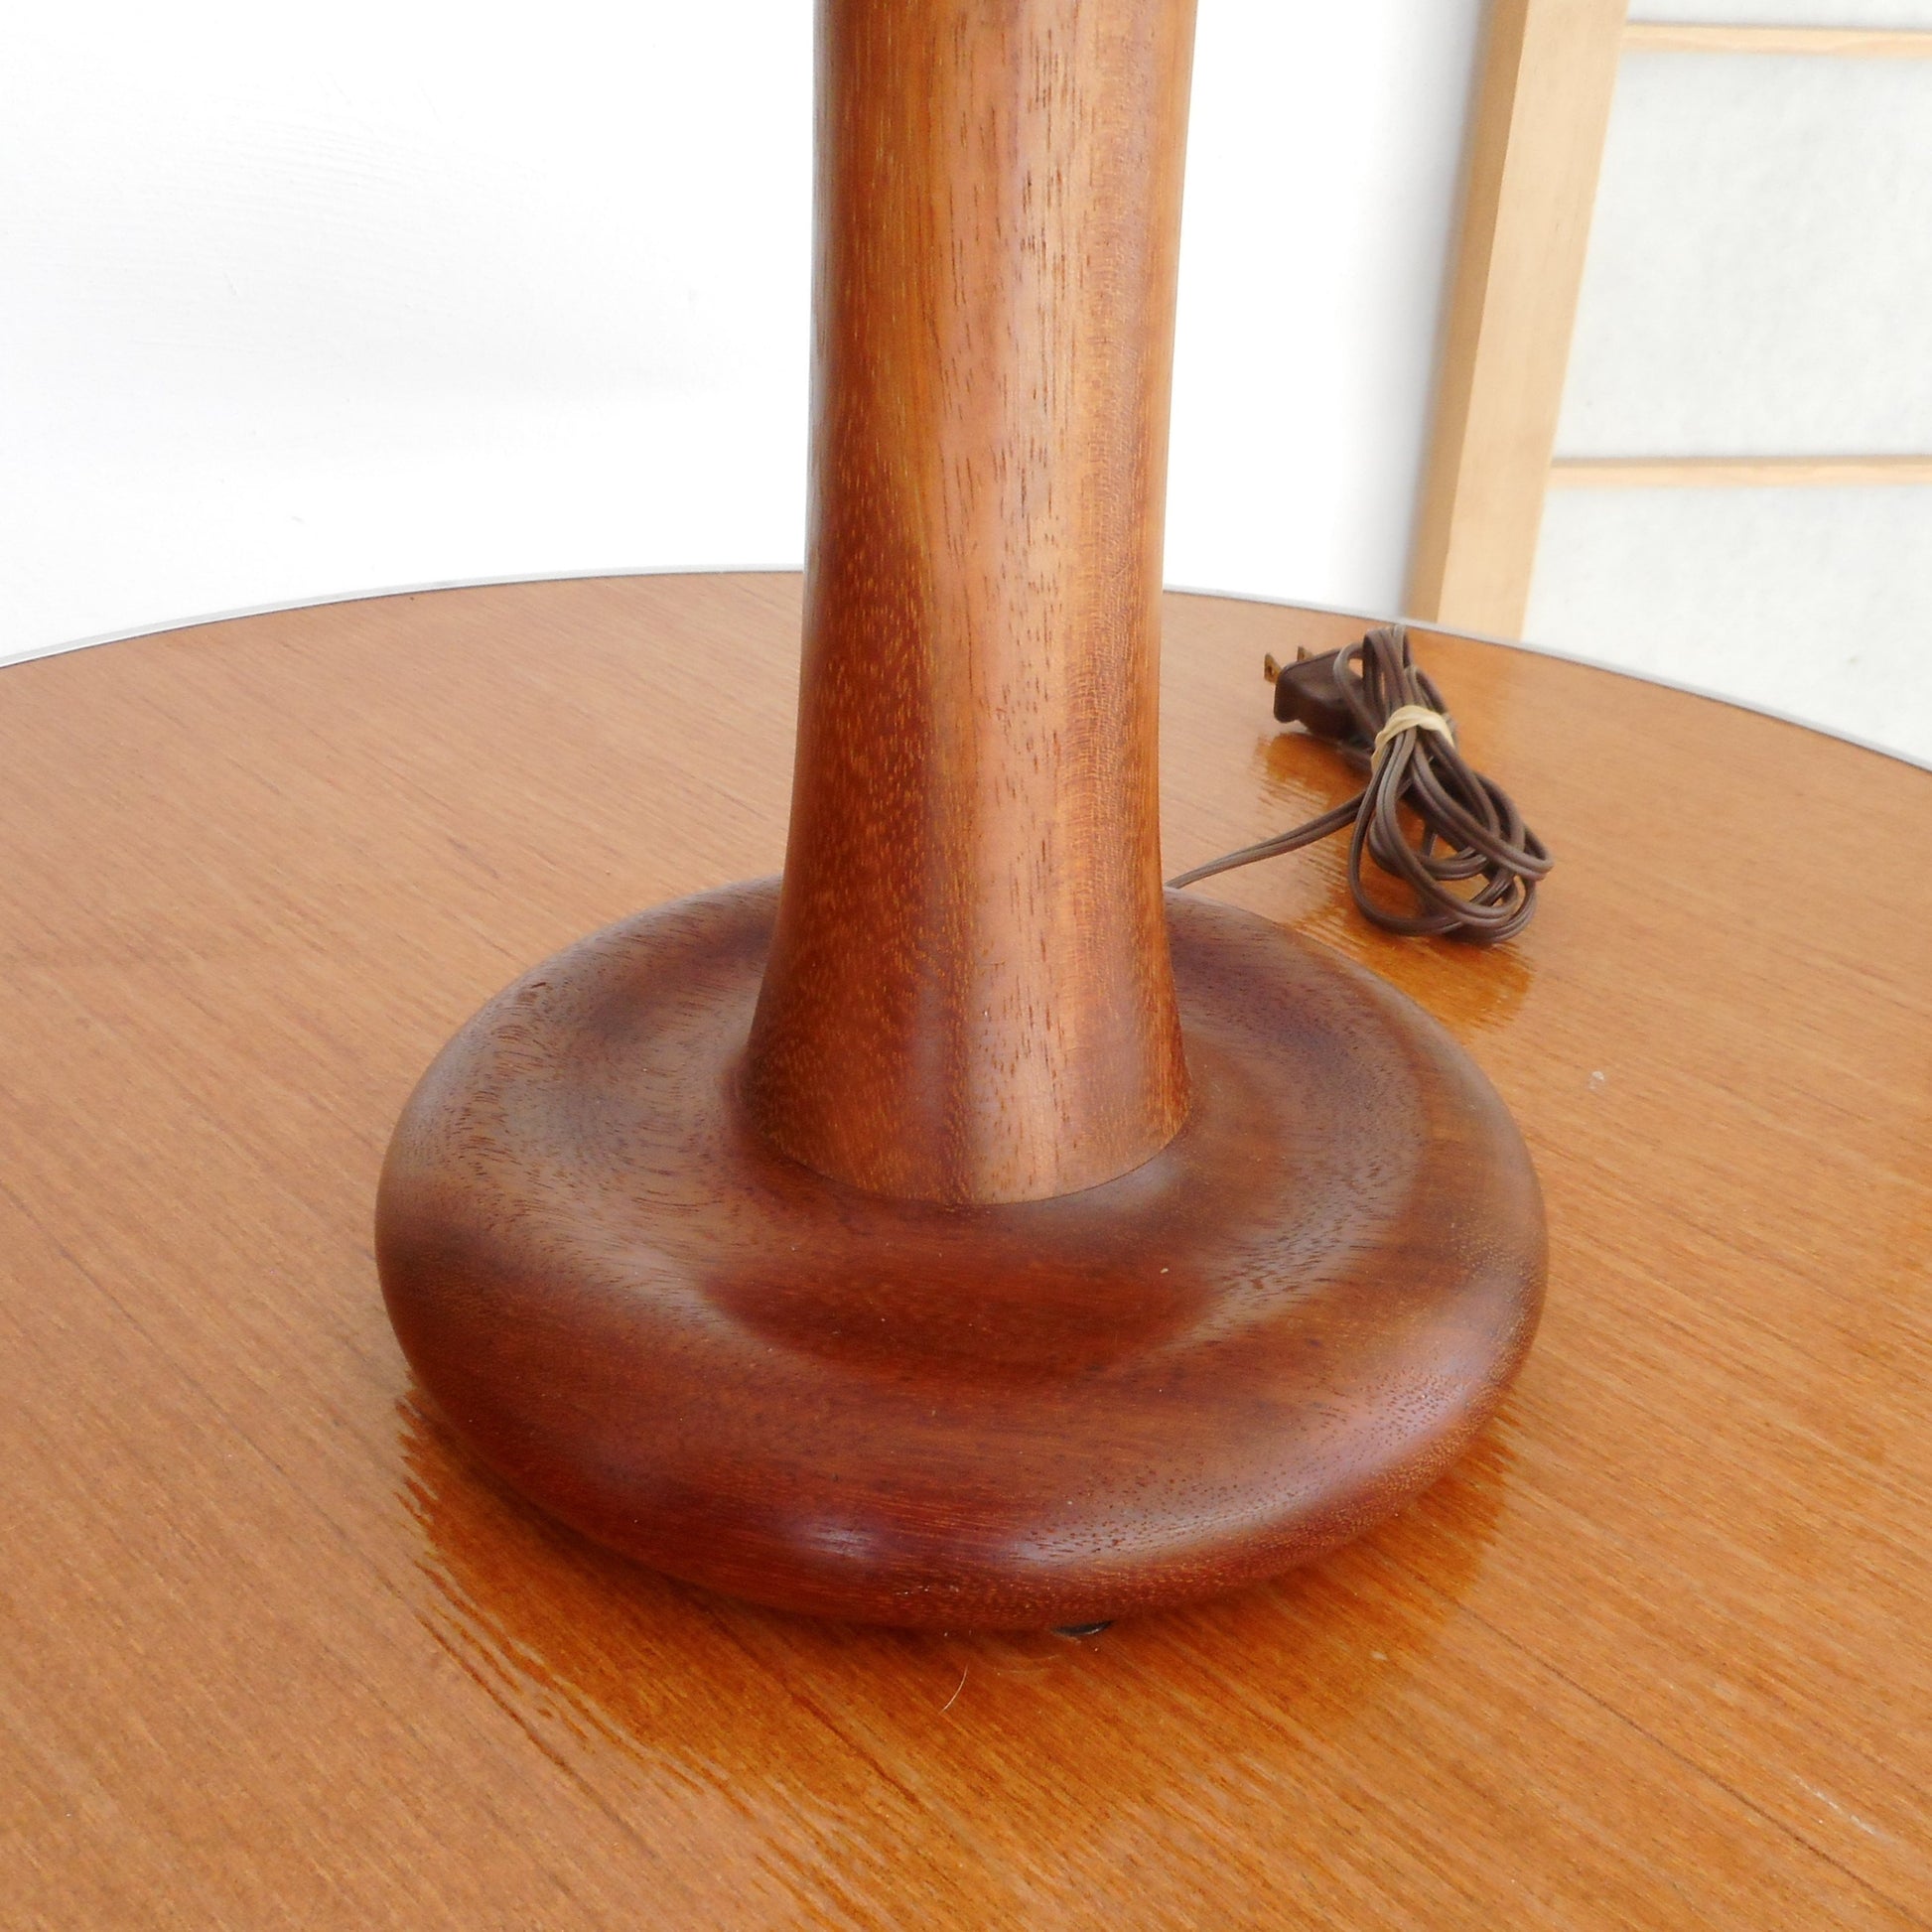 MCM Turned Teak Wood Table Lamp Mushroom Button Base Danish Modern